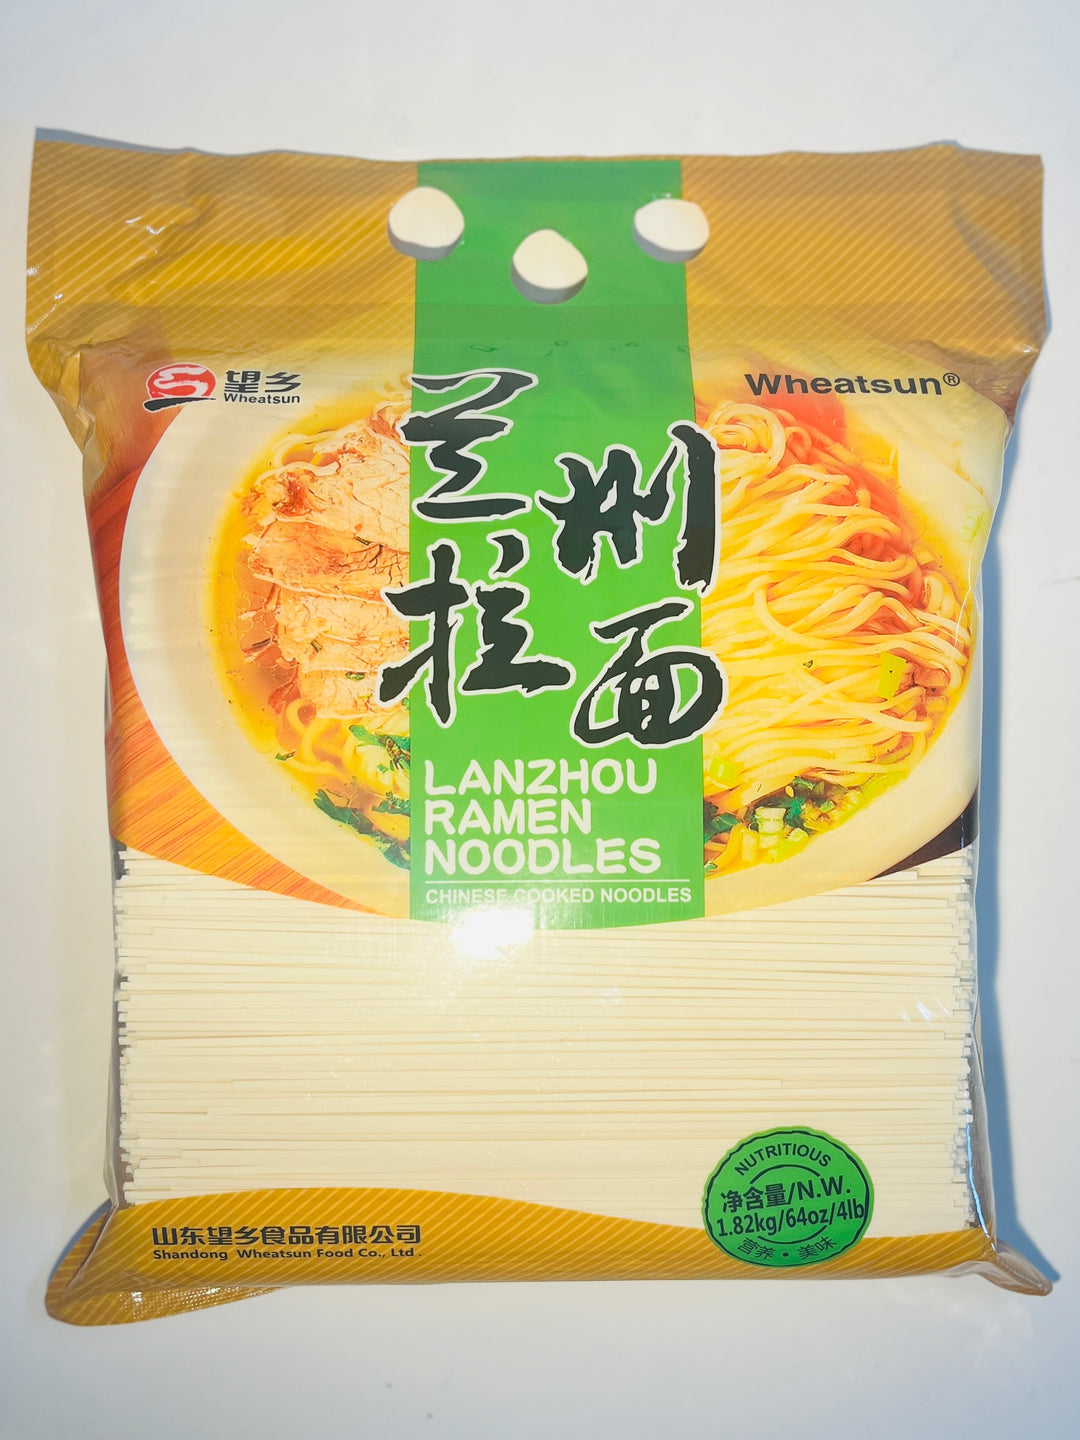 望乡兰州拉面1.82kg Wheat Sun Lanzhou Hand-Pulled Noodle